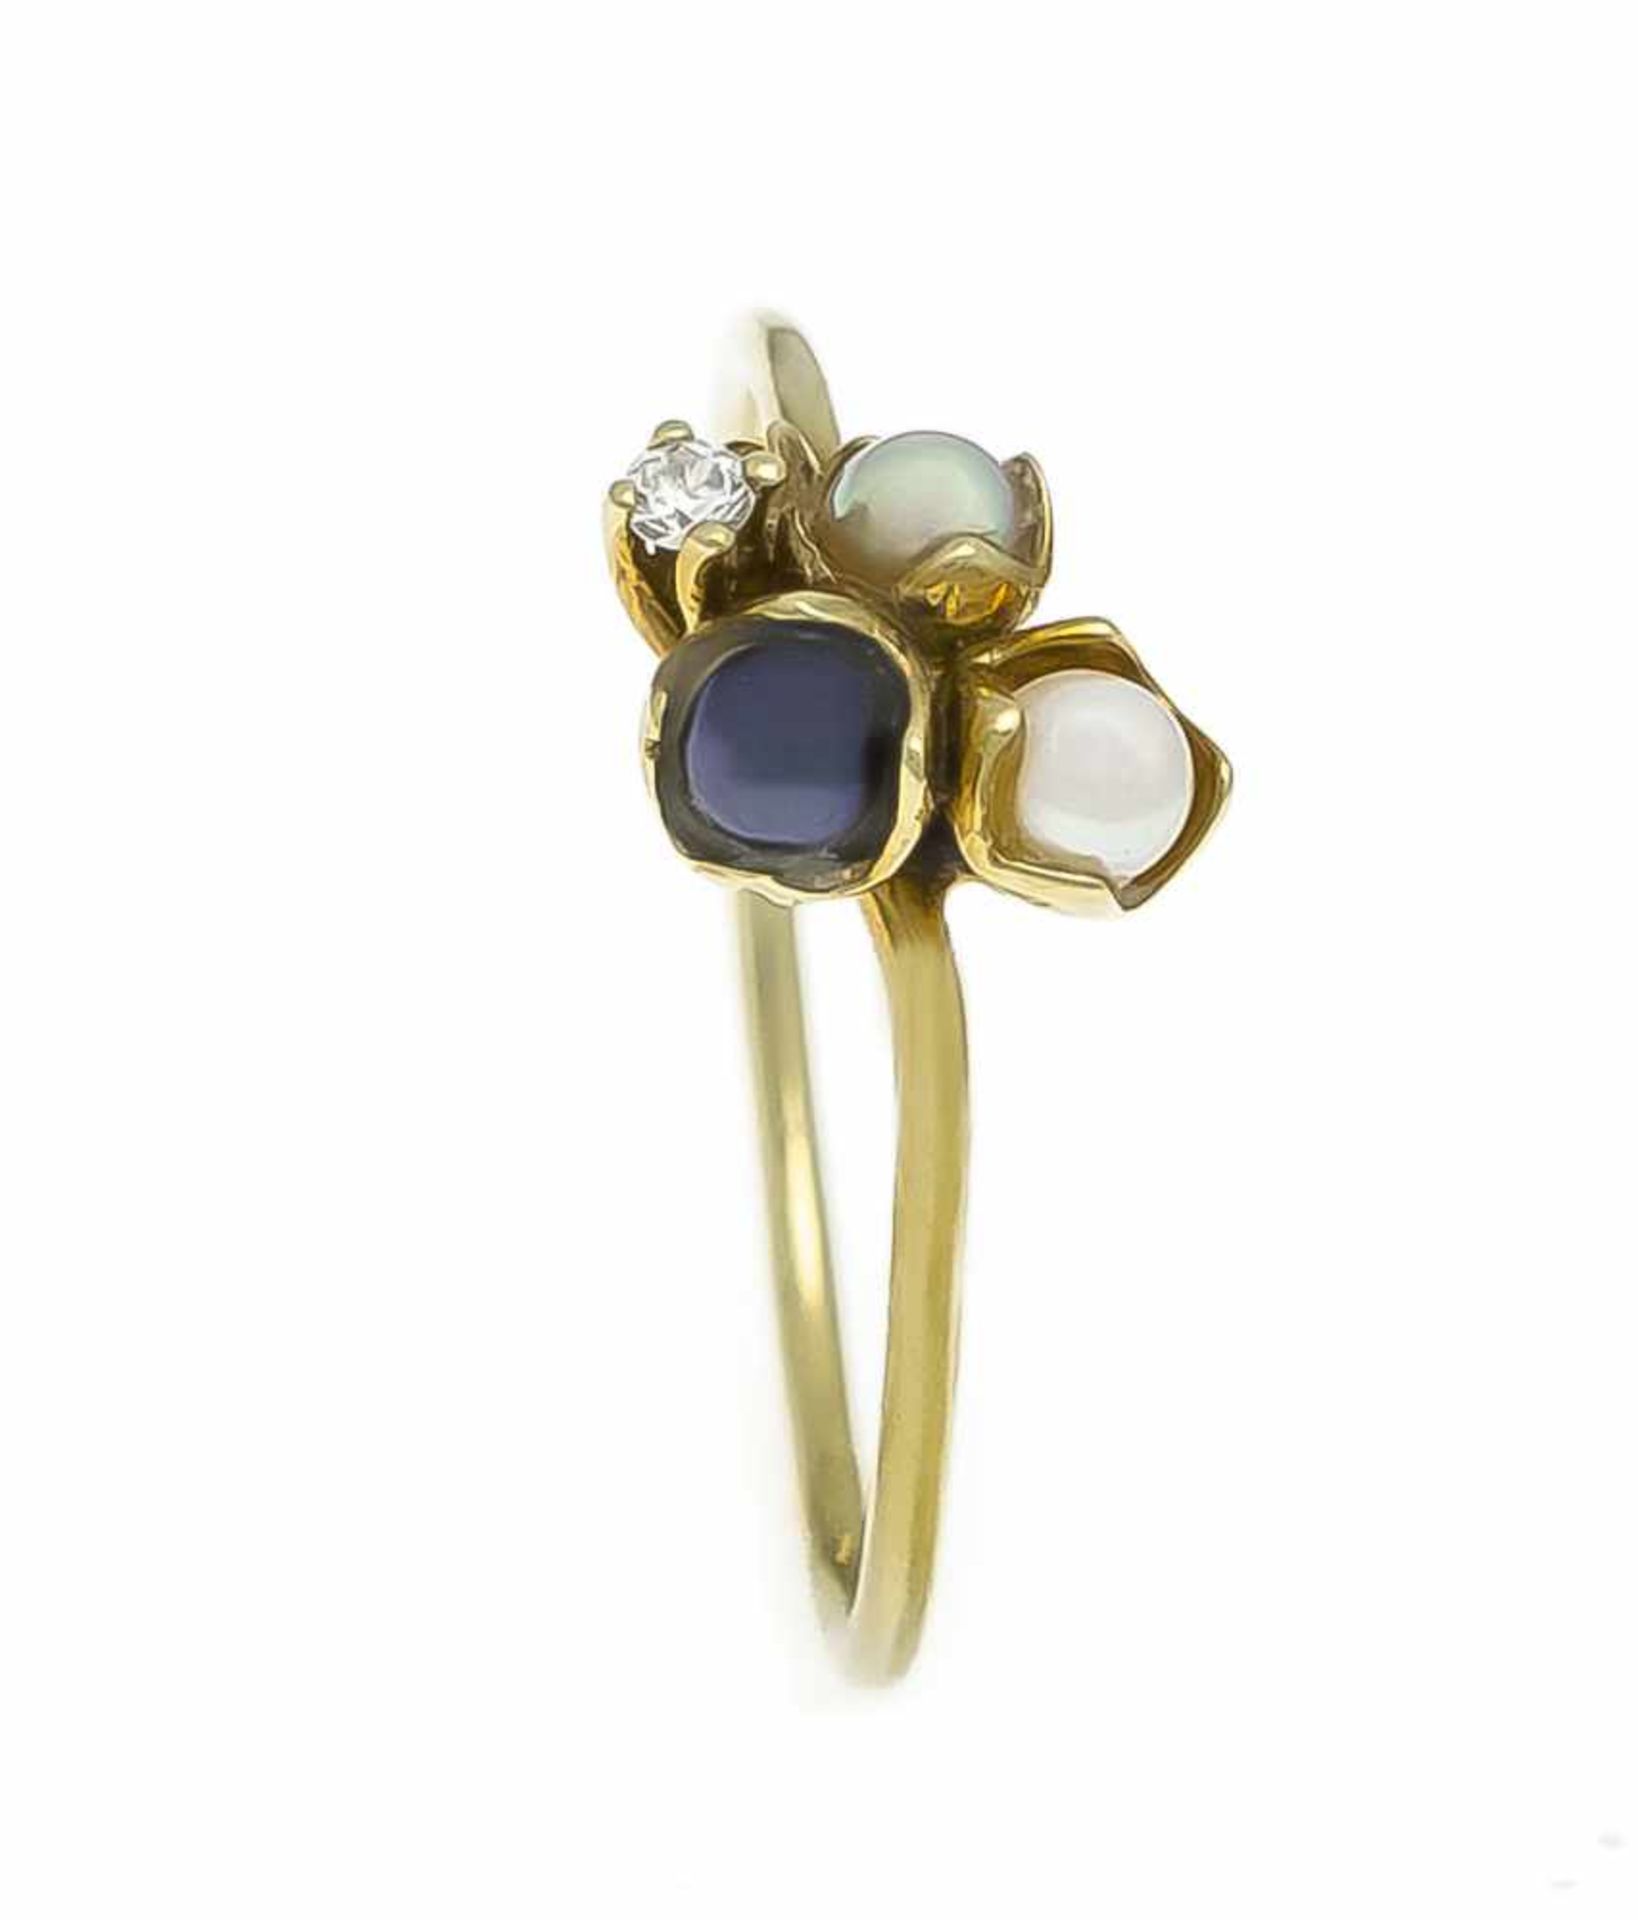 Perlen-Brillant-Ring GG 585/000 mit 3 runden Perlen in weiß, schwarz, silber und einemBrillanten 0,